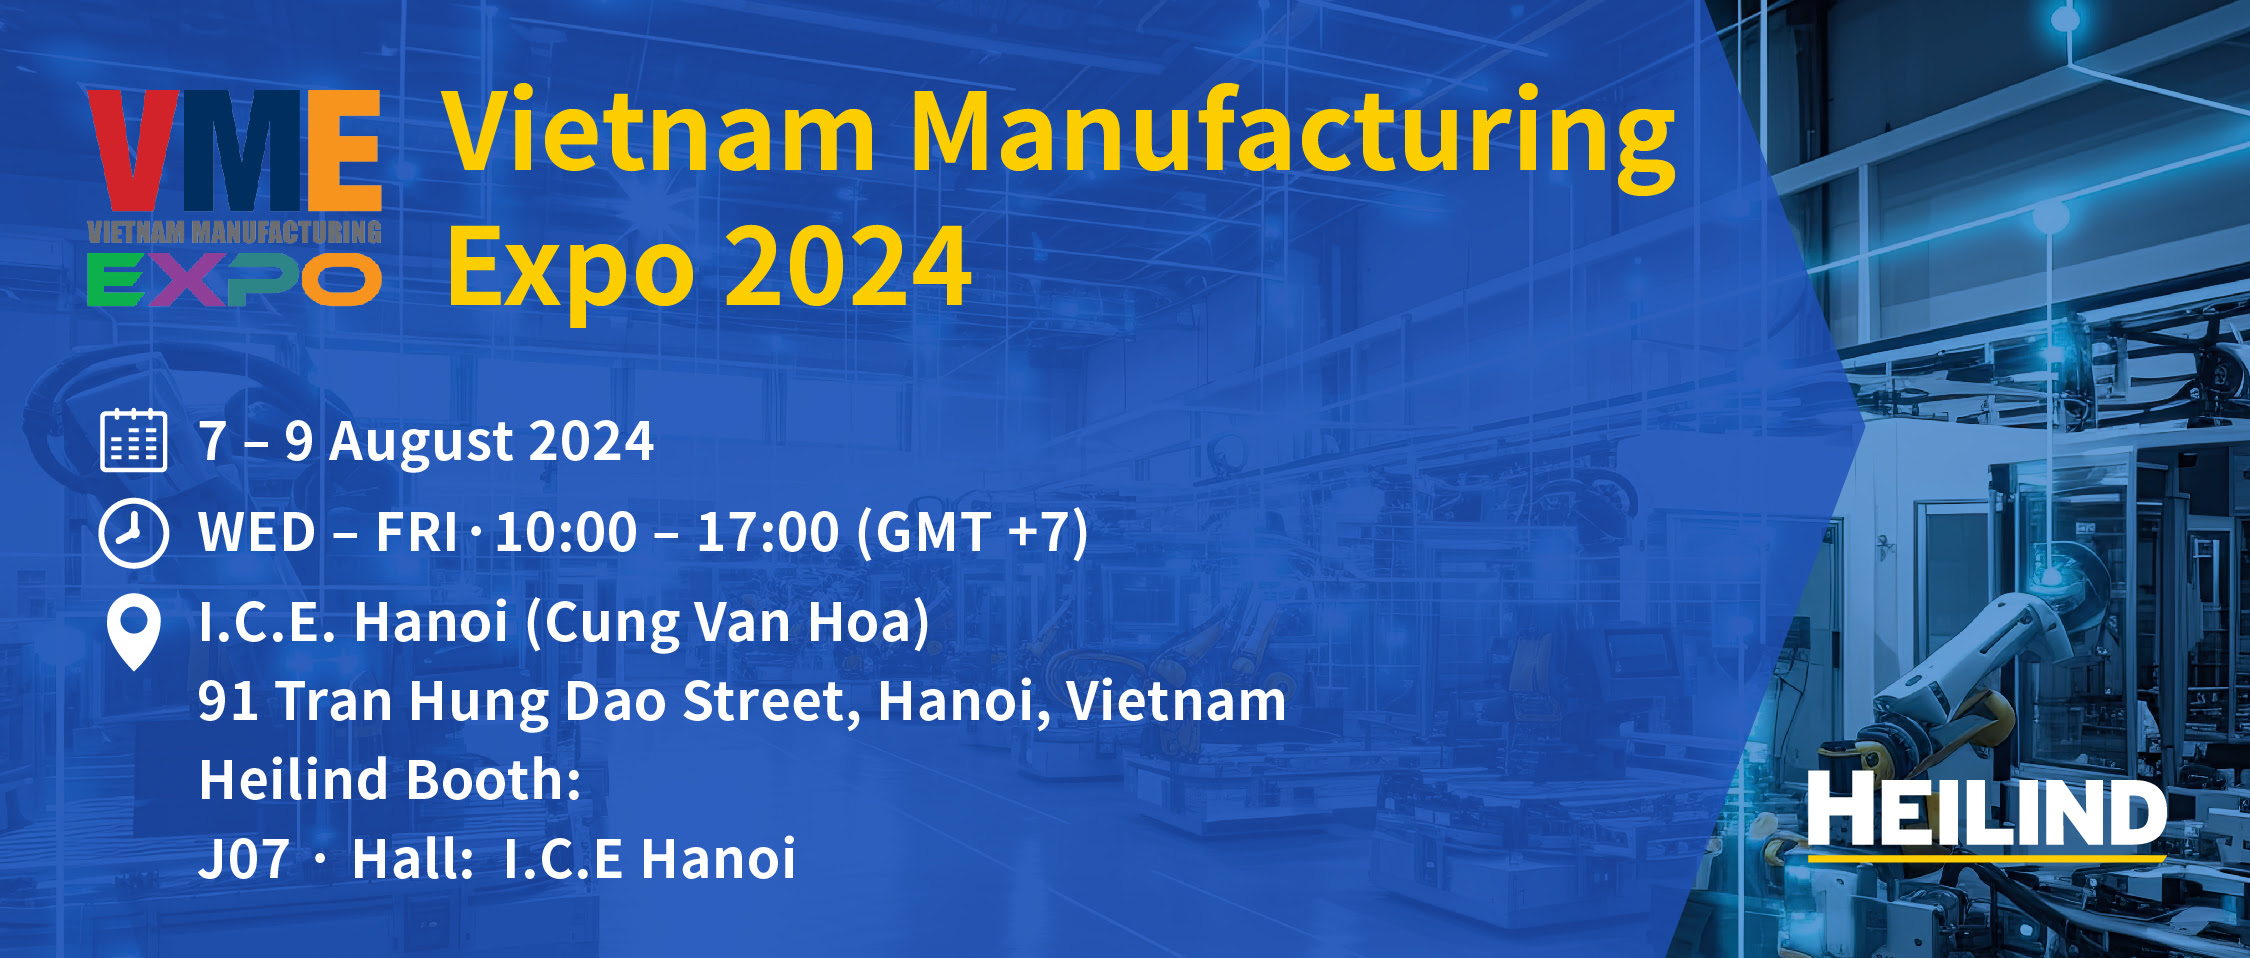 Vietnam Manufacturing Expo 2024, Gerbang Anda Menuju Masa Depan 